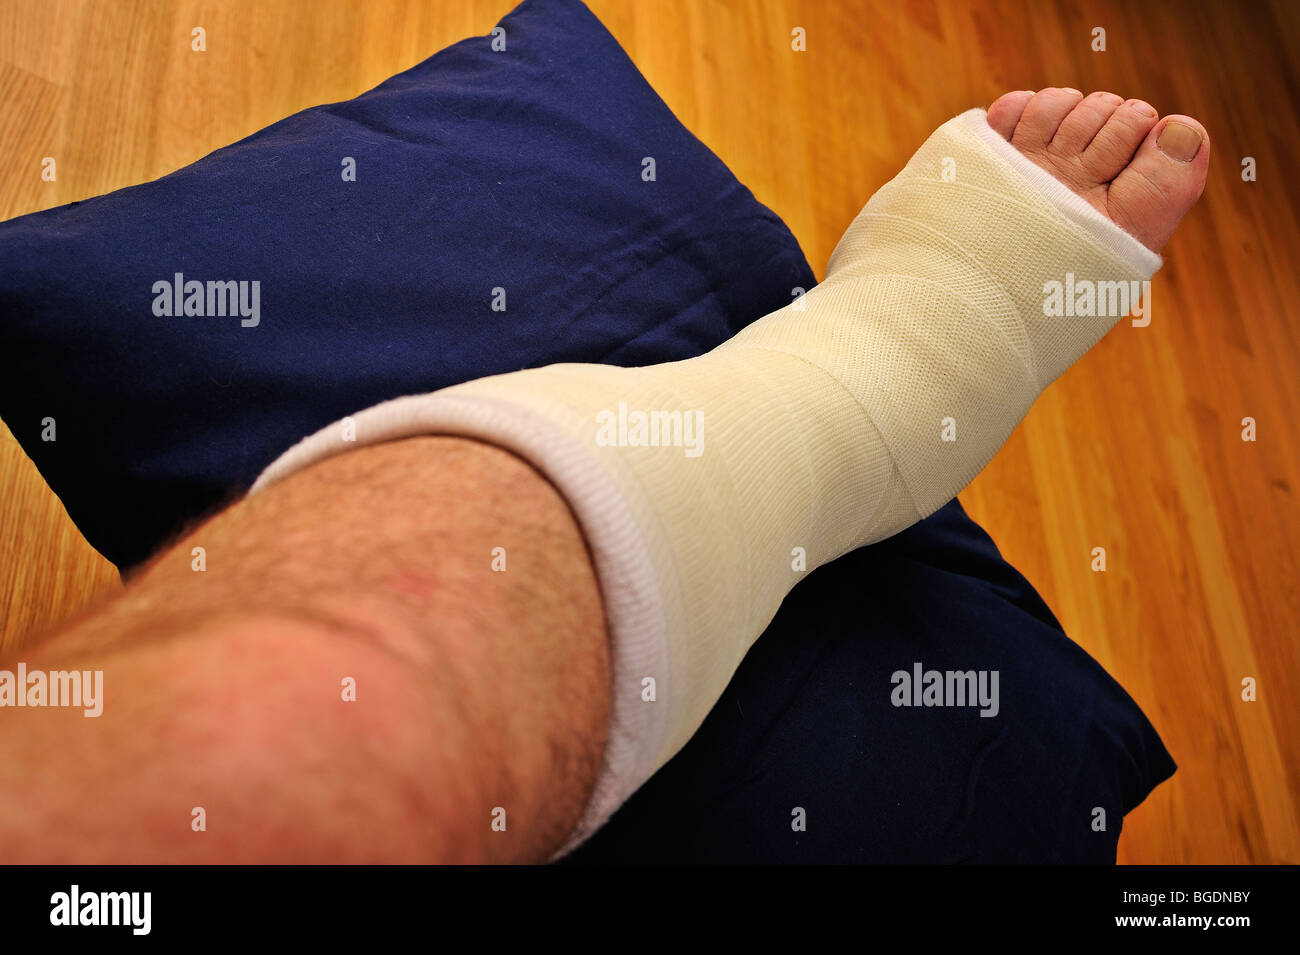 Détail d'une main d'homme jambe cassée dans un plâtre, élevée sur un coussin Banque D'Images